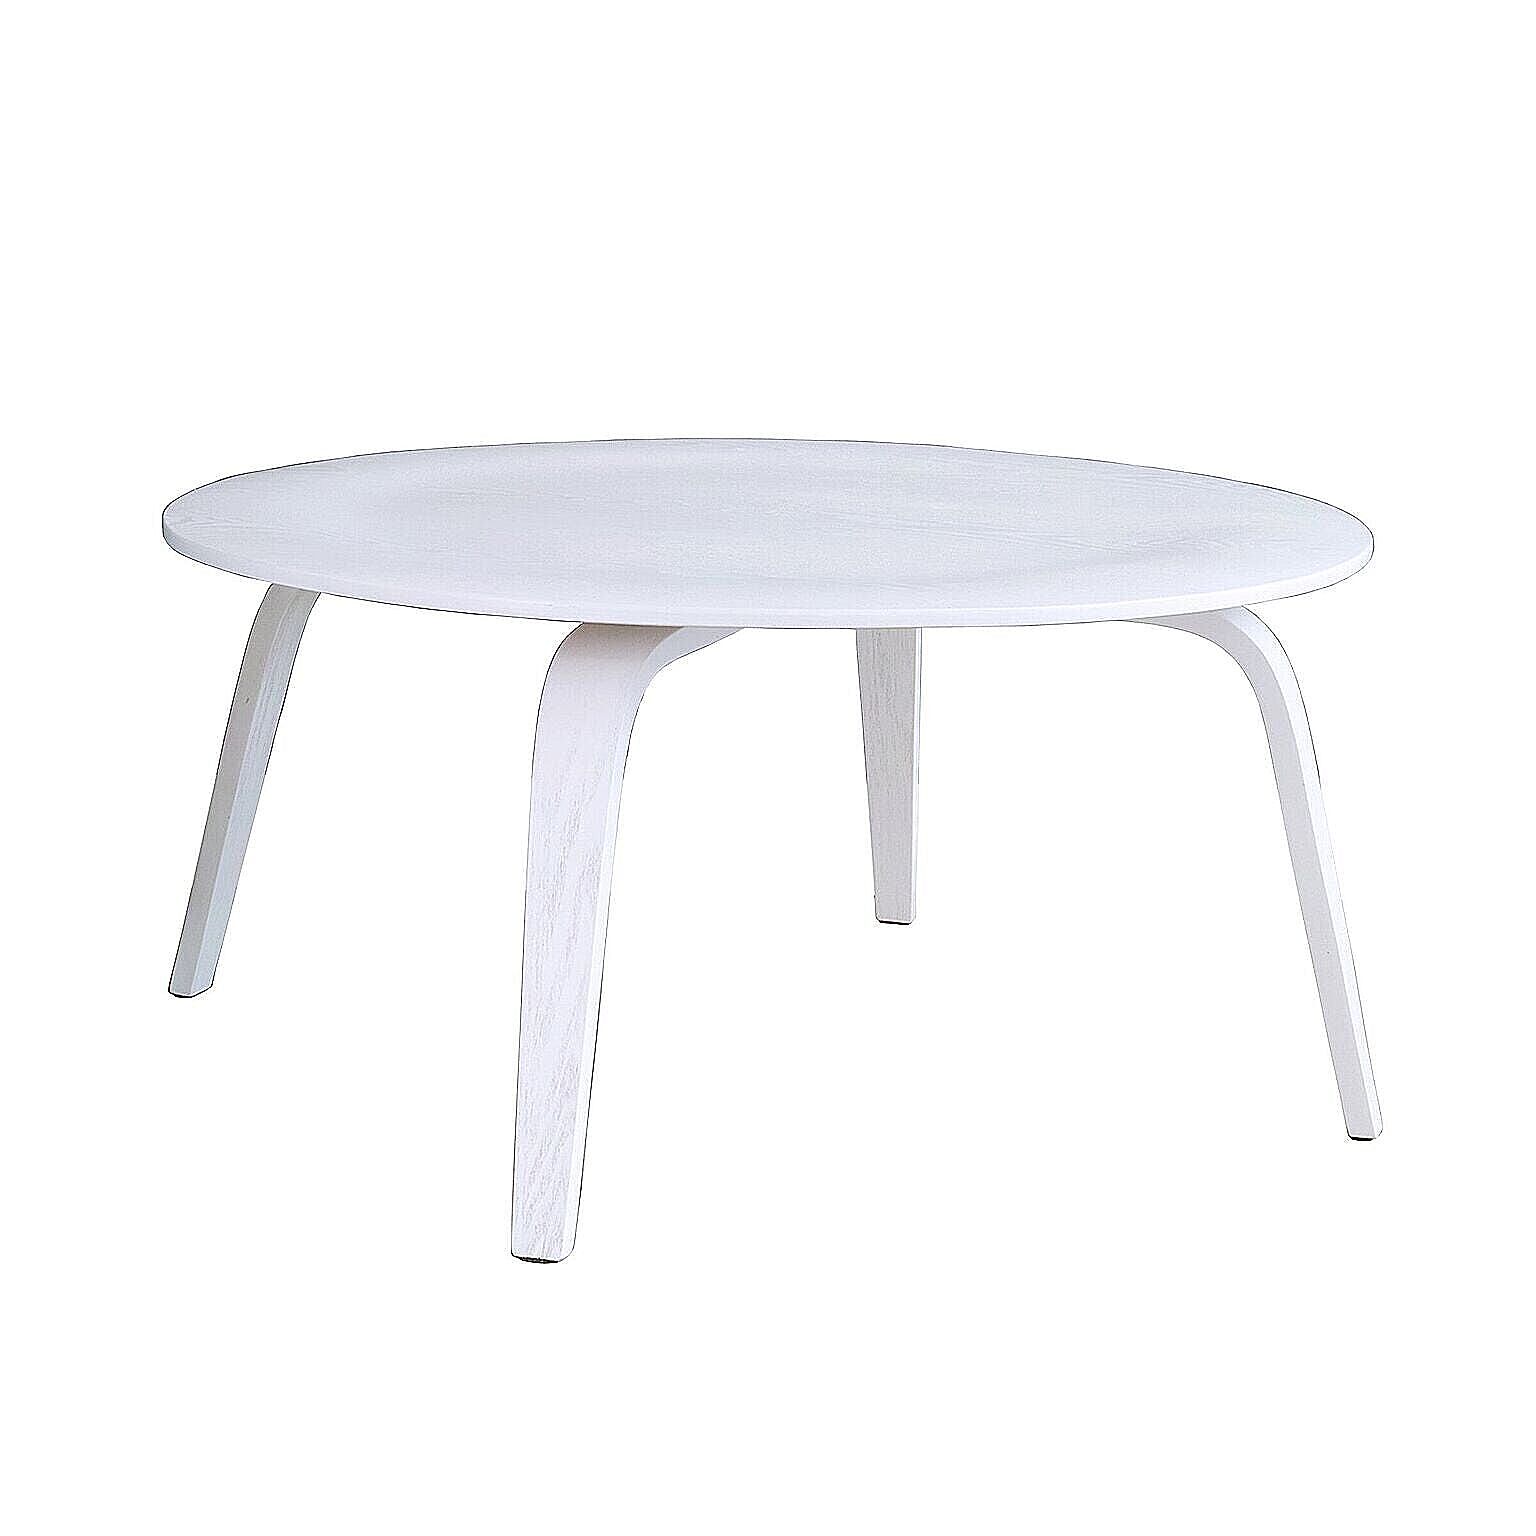 コーヒーテーブル ちゃぶ台 ローテーブル 円形テーブル